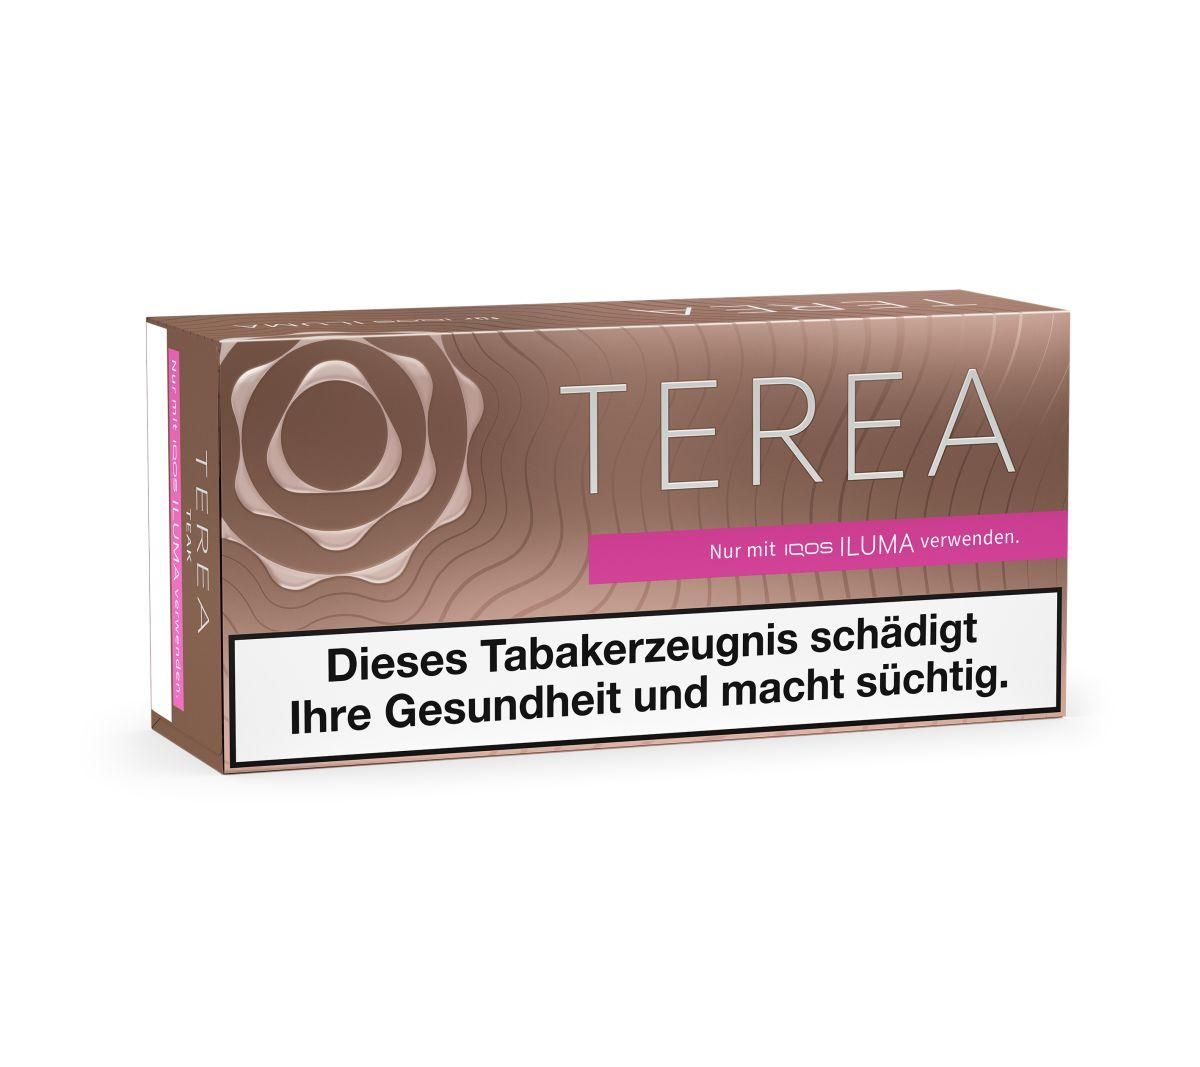 10 x IQOS Terea - Teak Tabaksticks für IQOS ILUMA / ILUMA ONE (20 Stück)